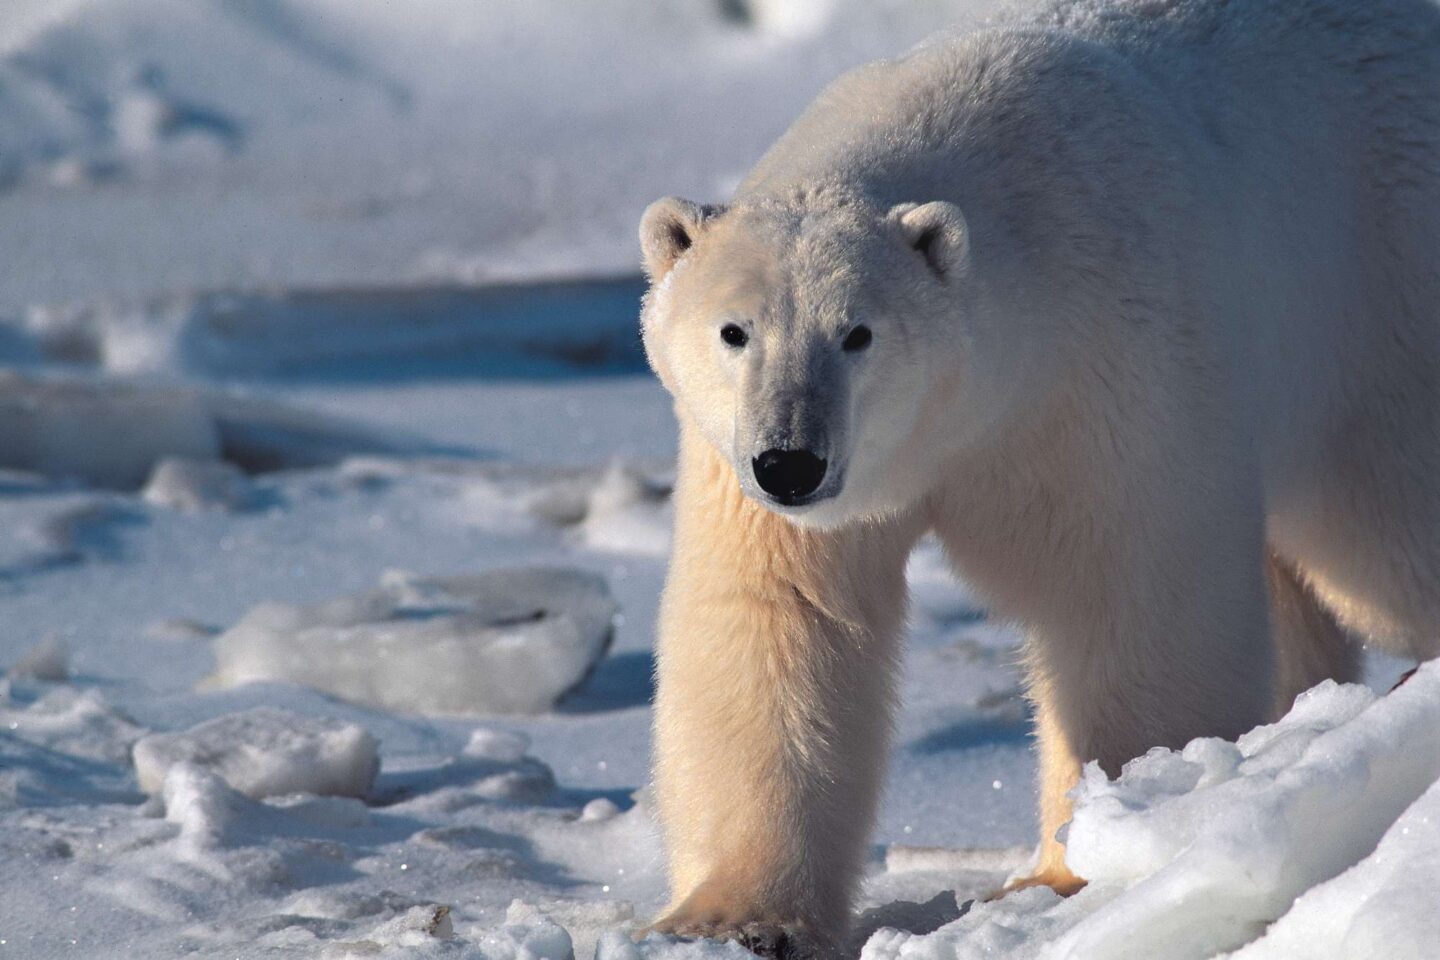 Loan polar bear in Greenland